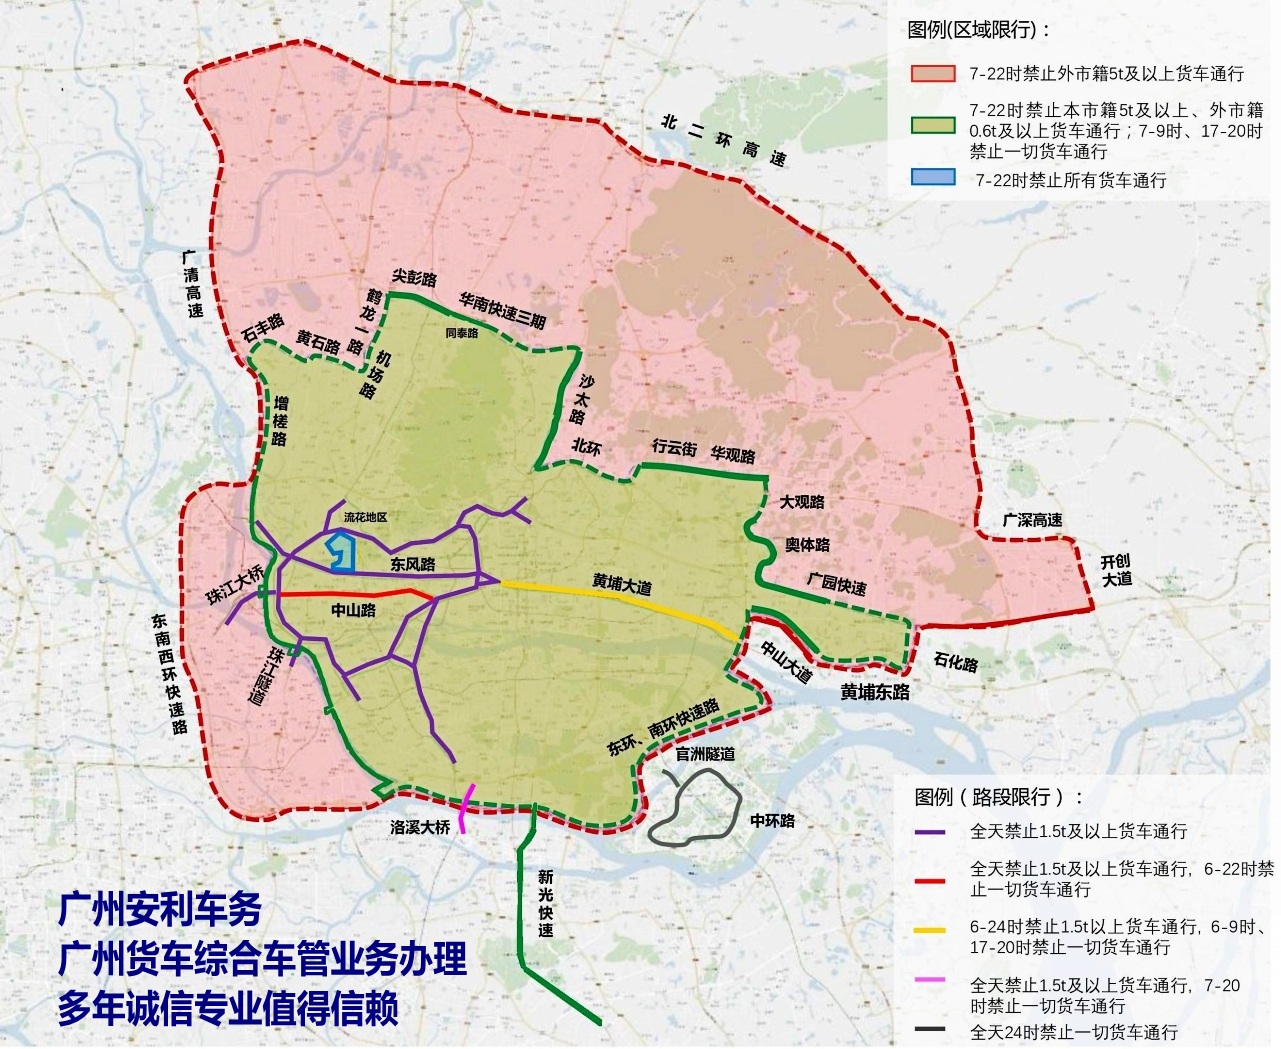 广州货车限行区域202107157.jpg